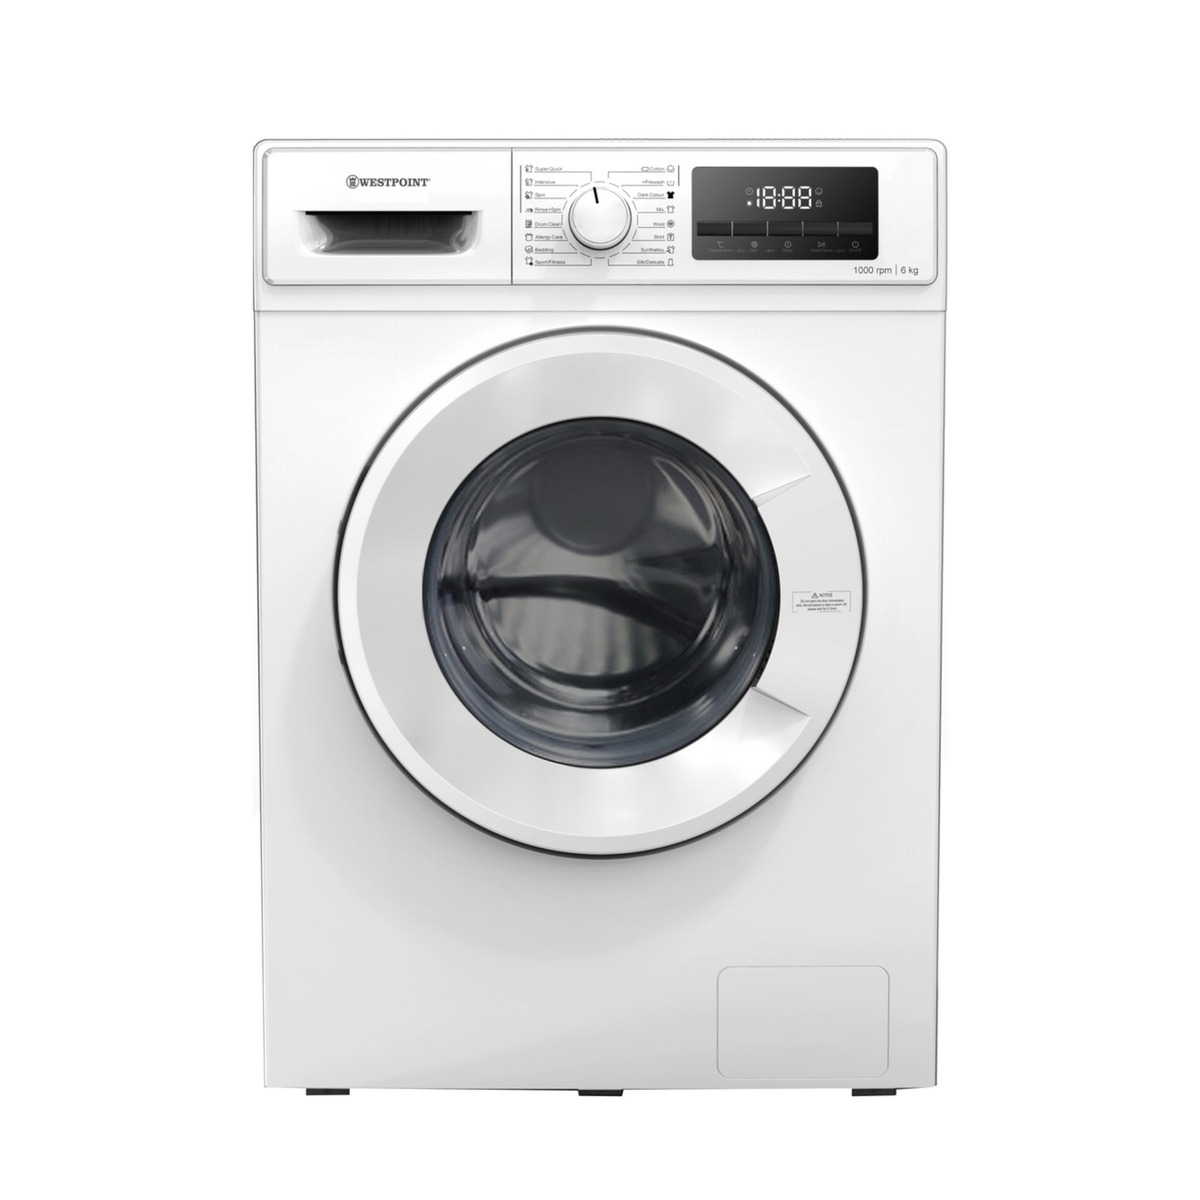 Westpoint Front Load Washing Machine, 6 kg, 1000 RPM, White, WMT61022